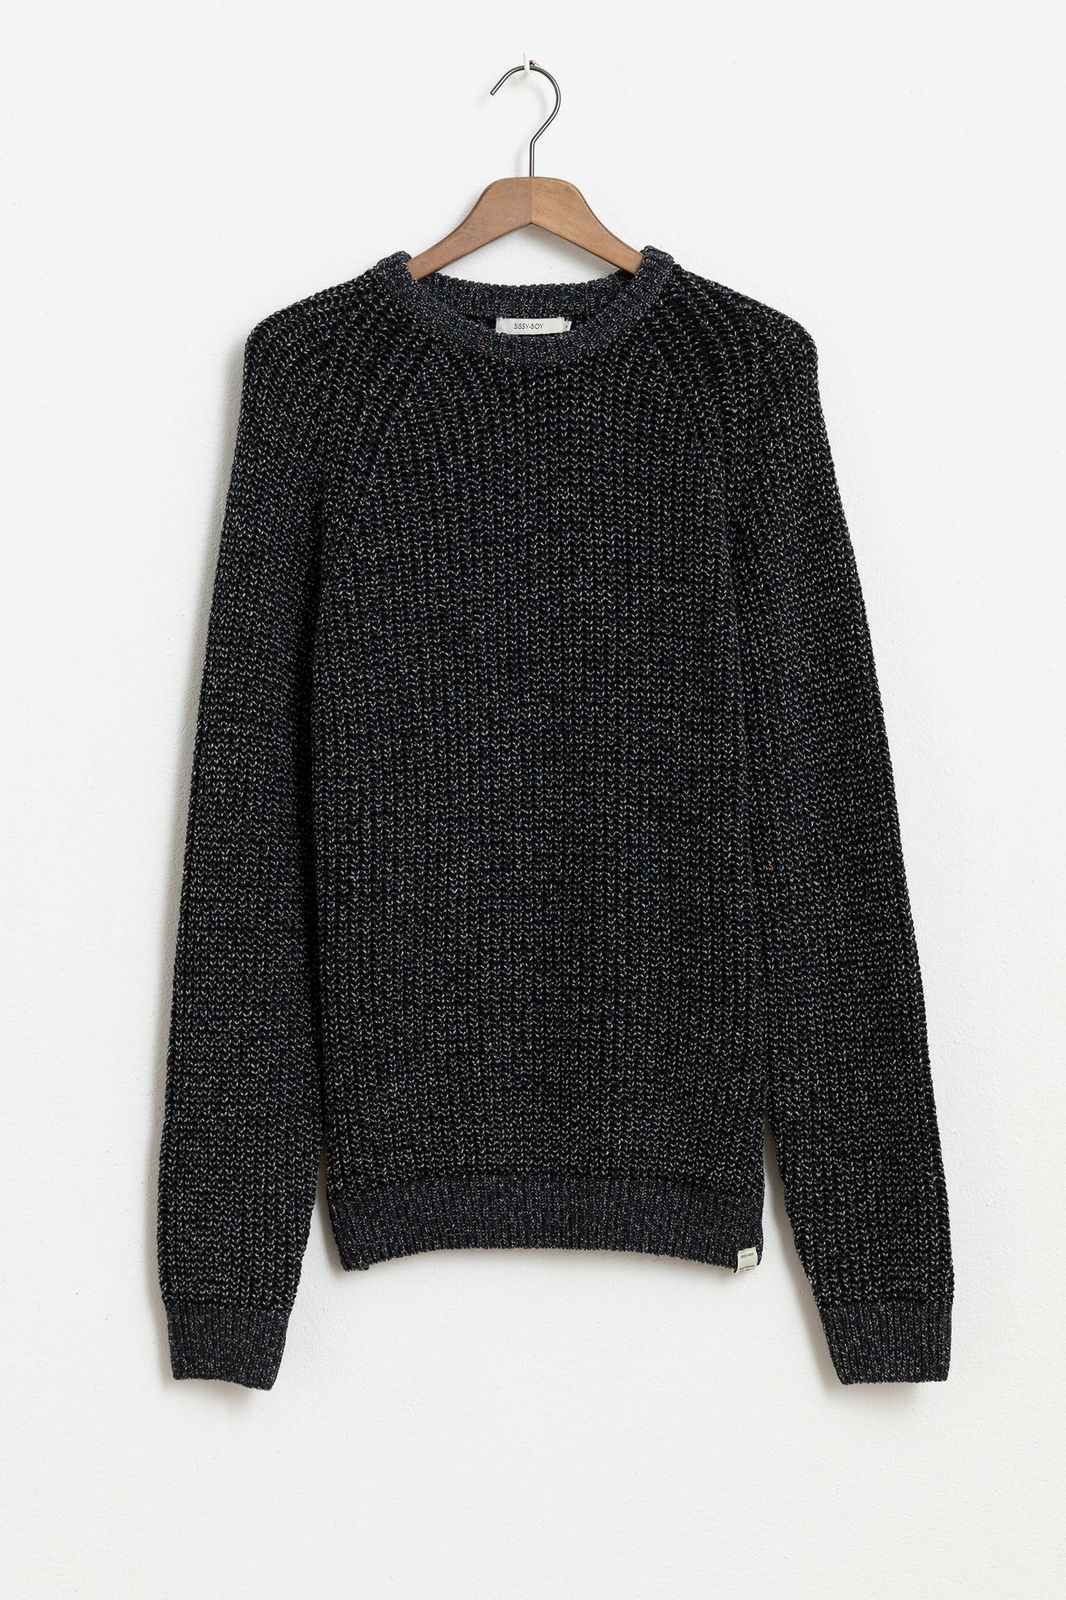 Baumwoll-Pullover - schwarz